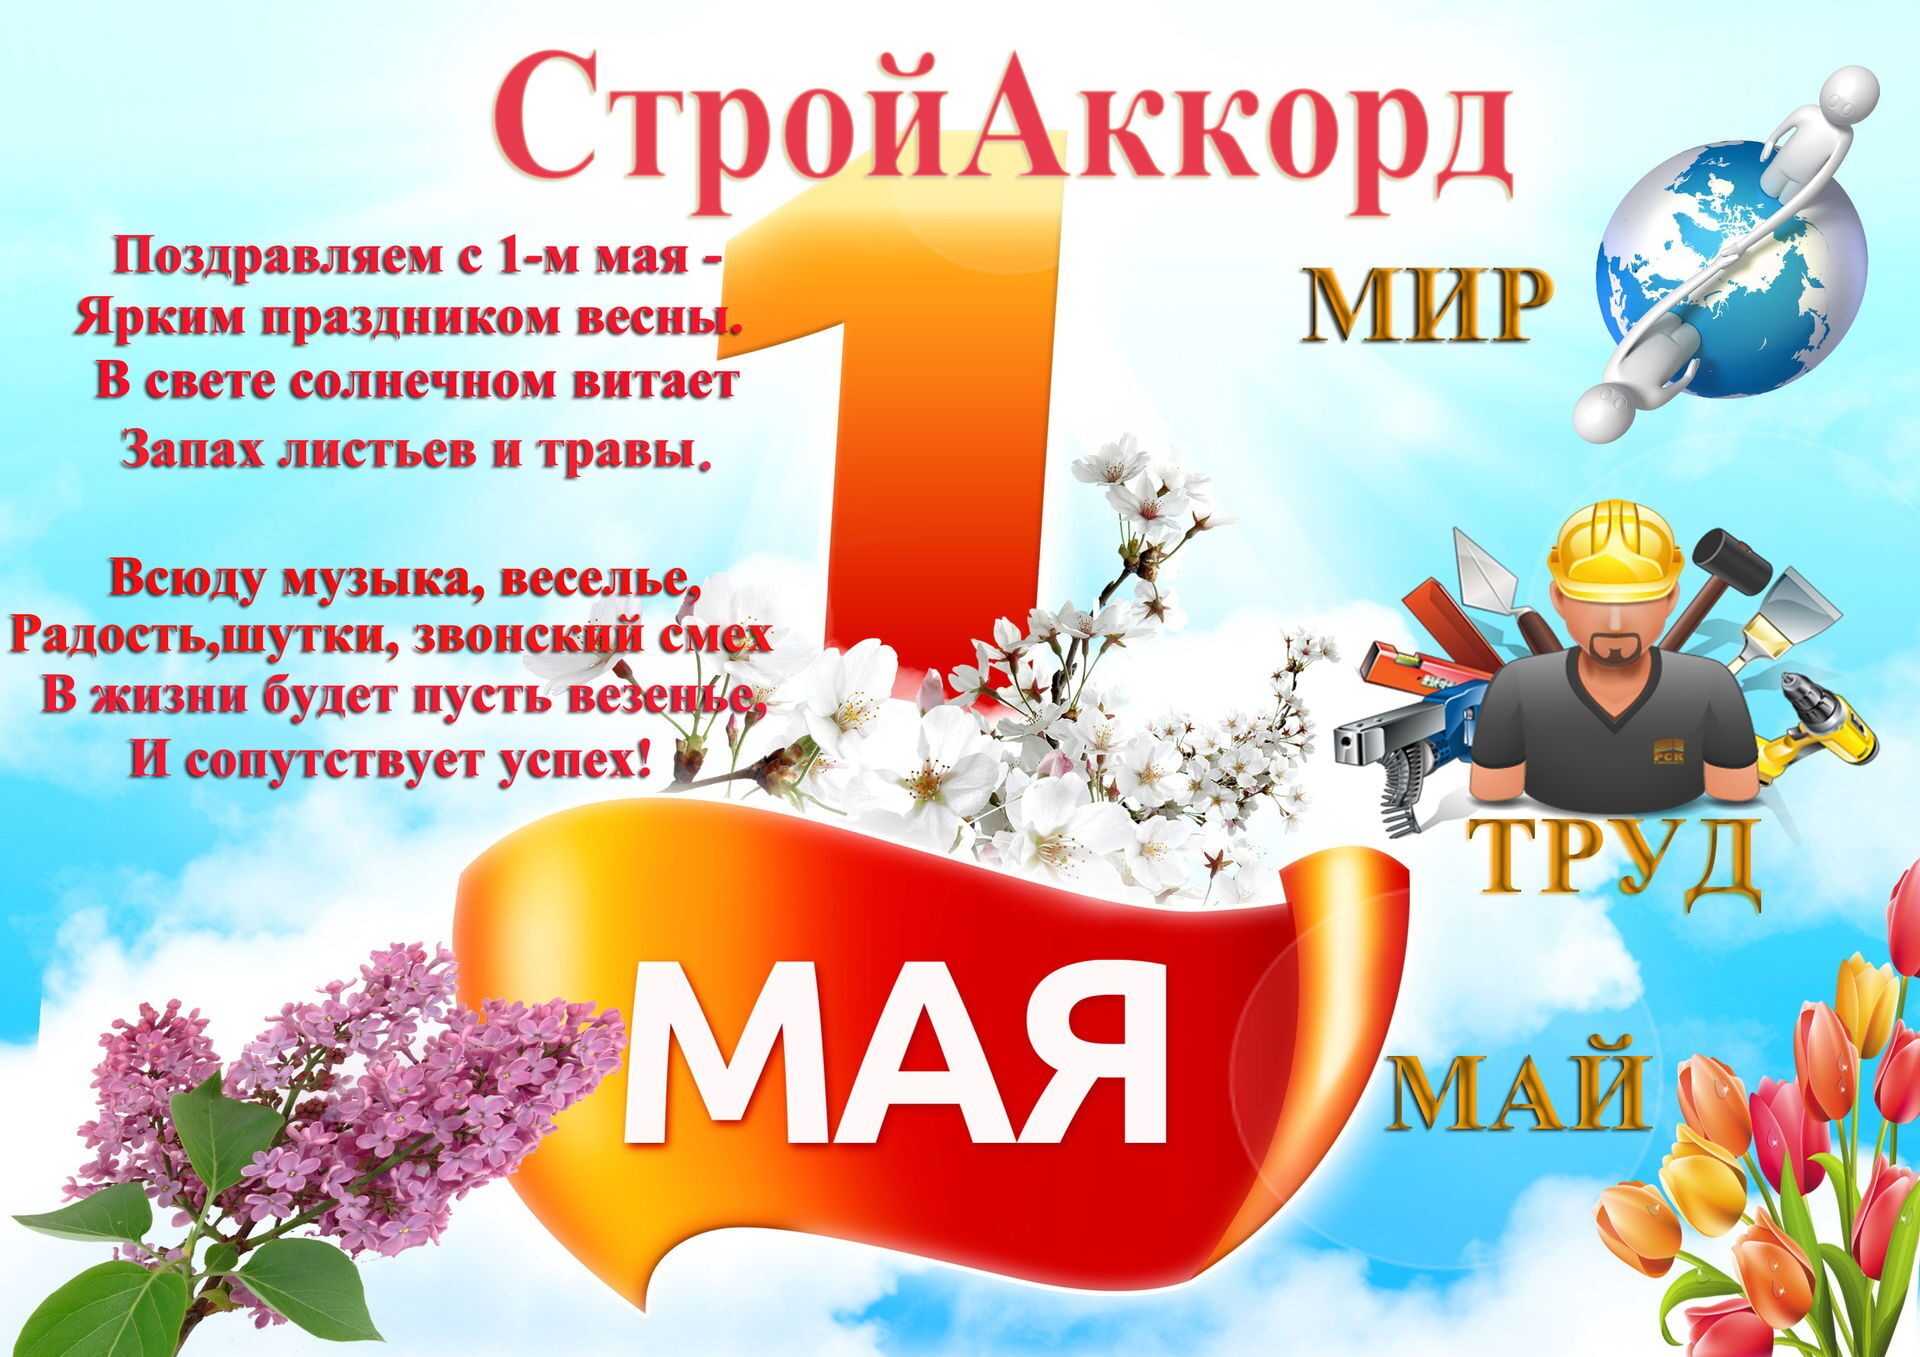 Жду 1 мая. 1 Мая праздник весны и труда. 1 Мая праздник. Поздравление с 1 мая. 1 Мая плакат.